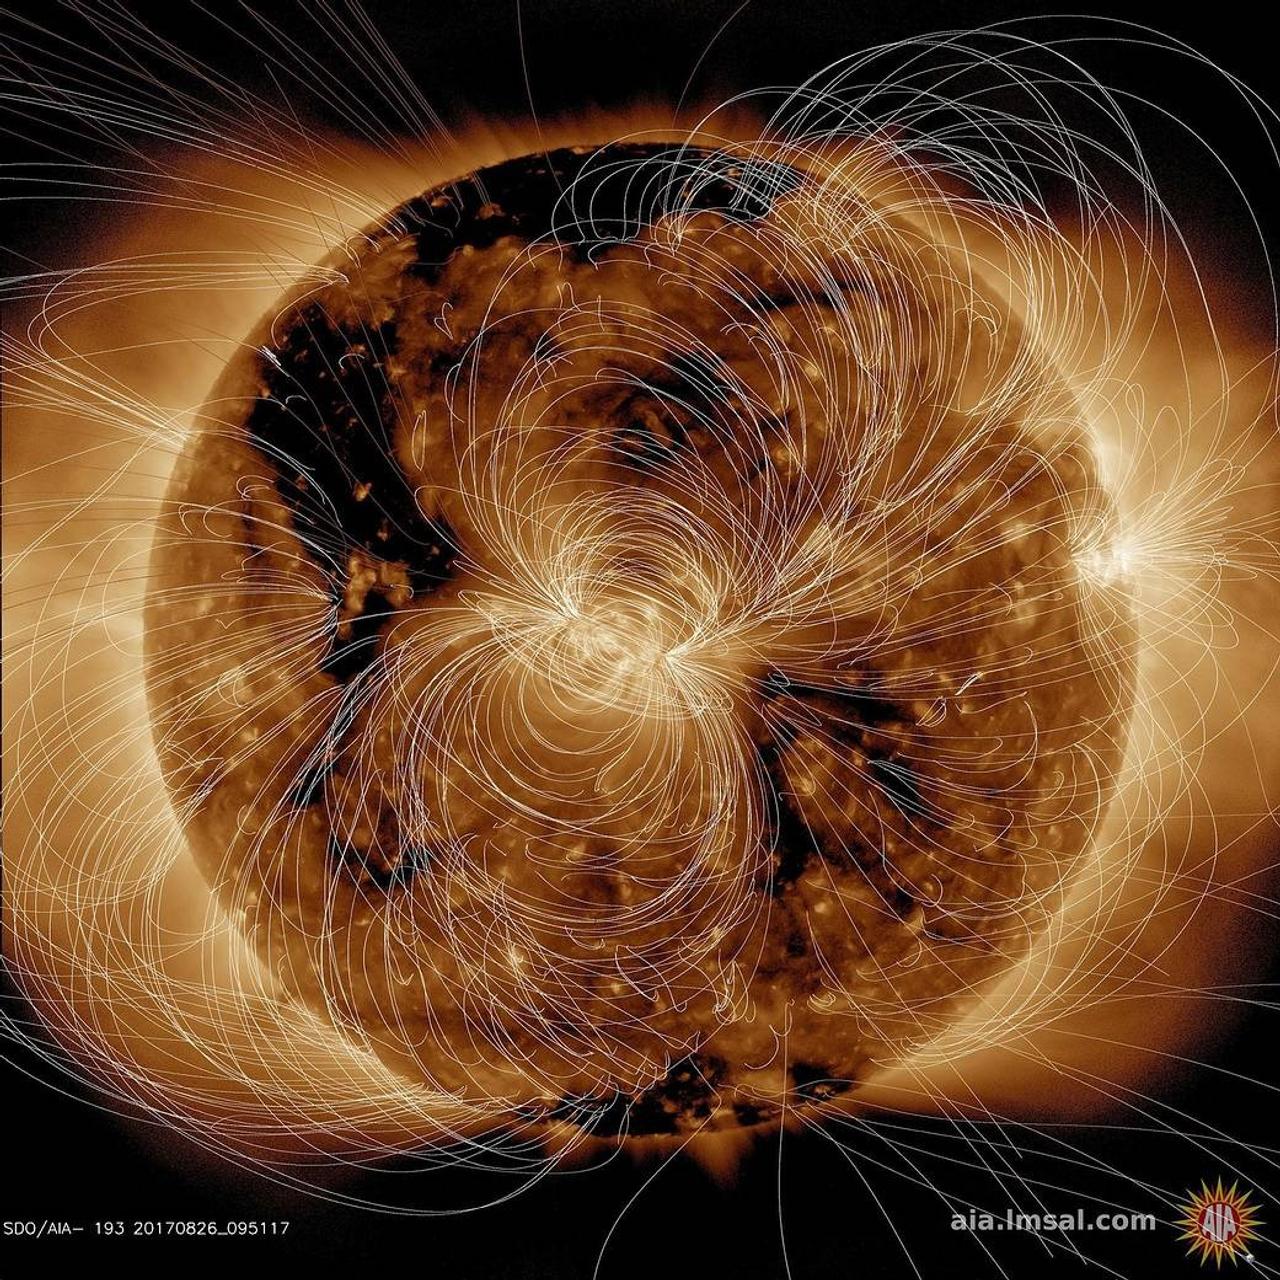 NASAが2018年8月10日に太陽が放出した磁場をCGで描く